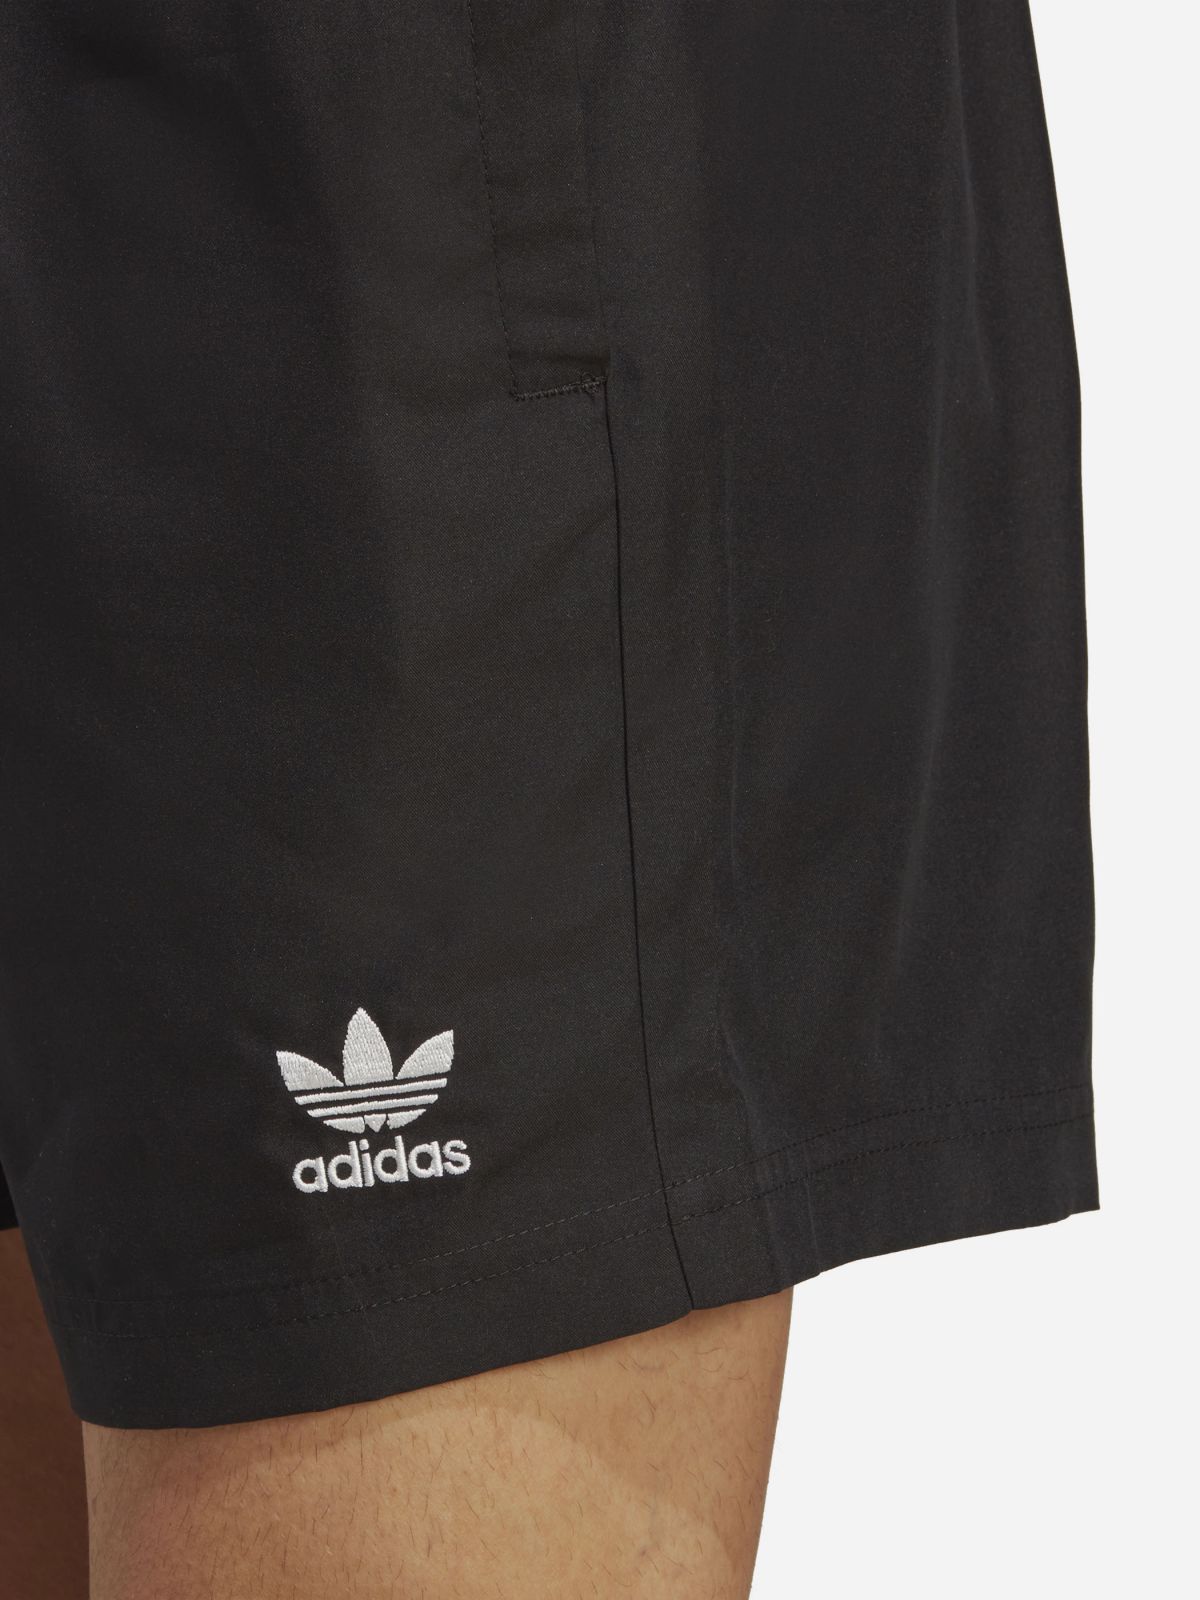  מכנסי בגד ים עם הדפס לוגו של ADIDAS Originals